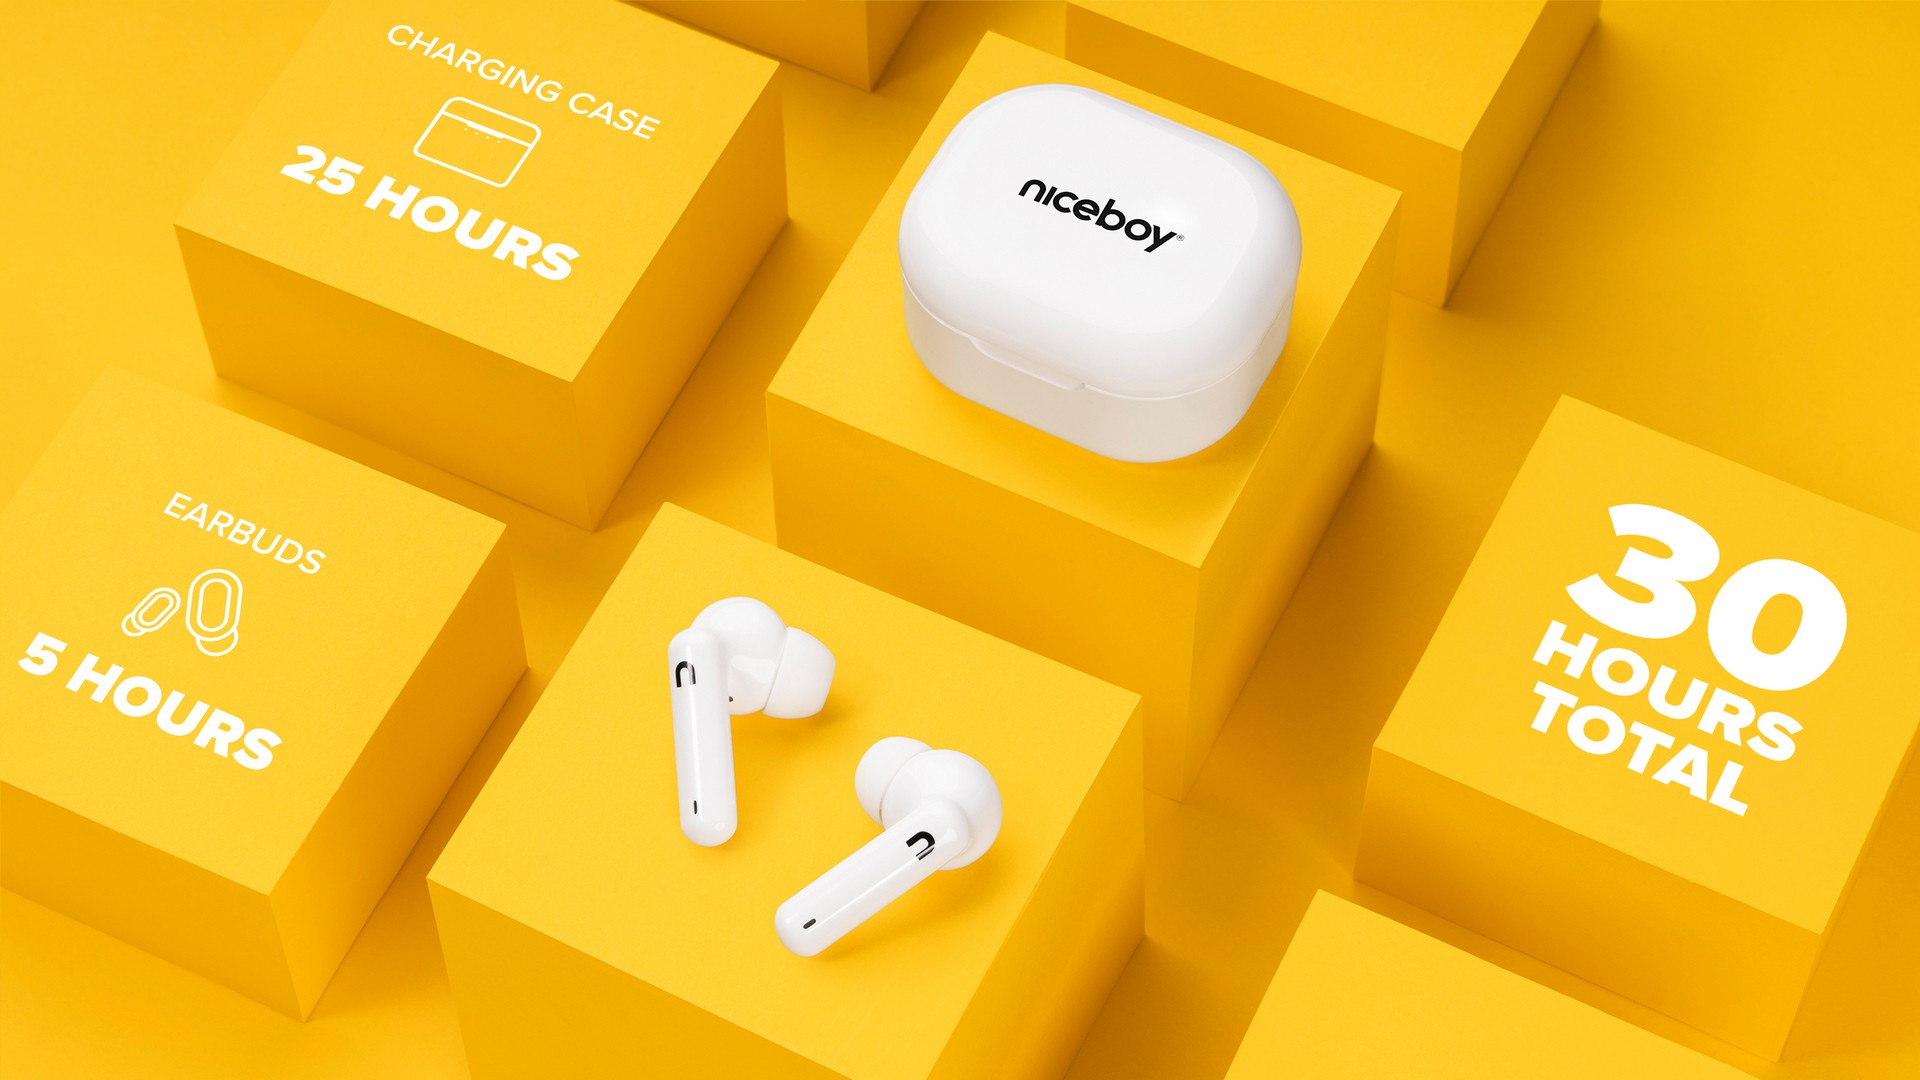 A Niceboy Hive Pins 3 vezeték nélküli fülhallgató töltő tokkal 1 feltöltéssel 30 óra hosszát használható.